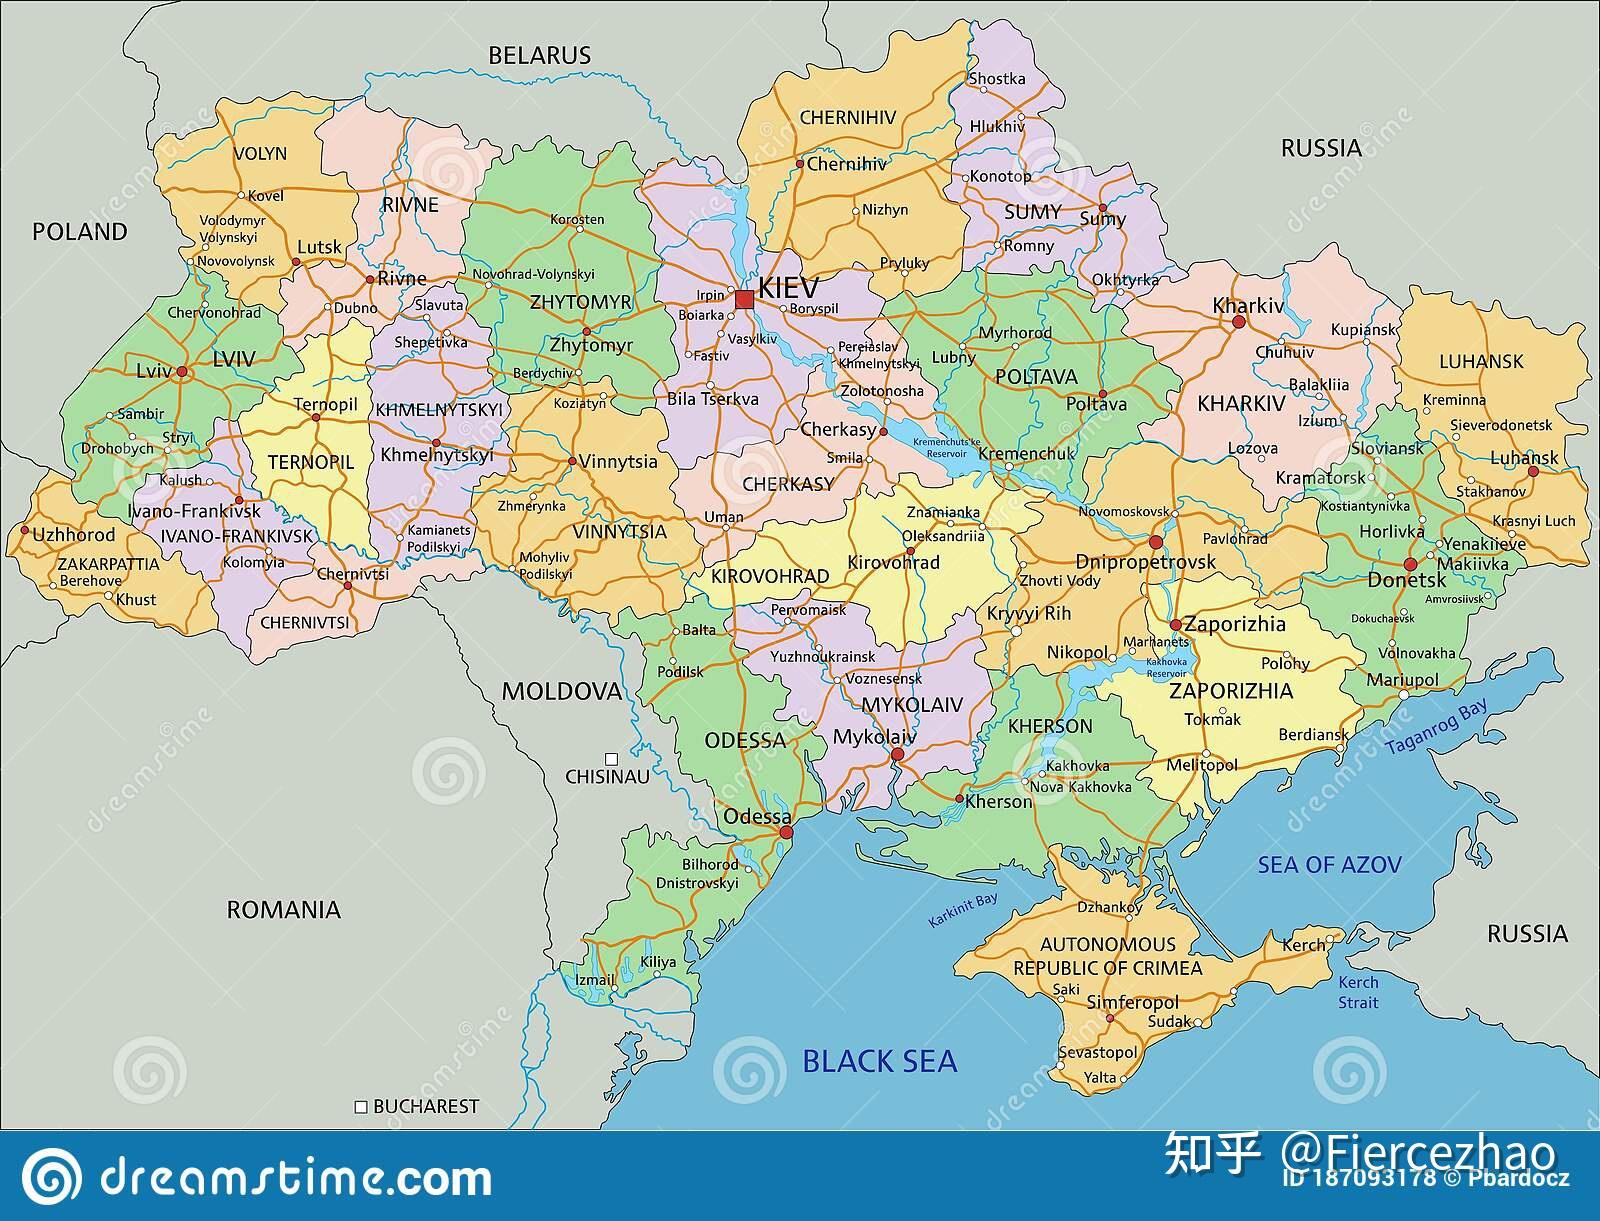 乌克兰高清地图(将成为历史地图)